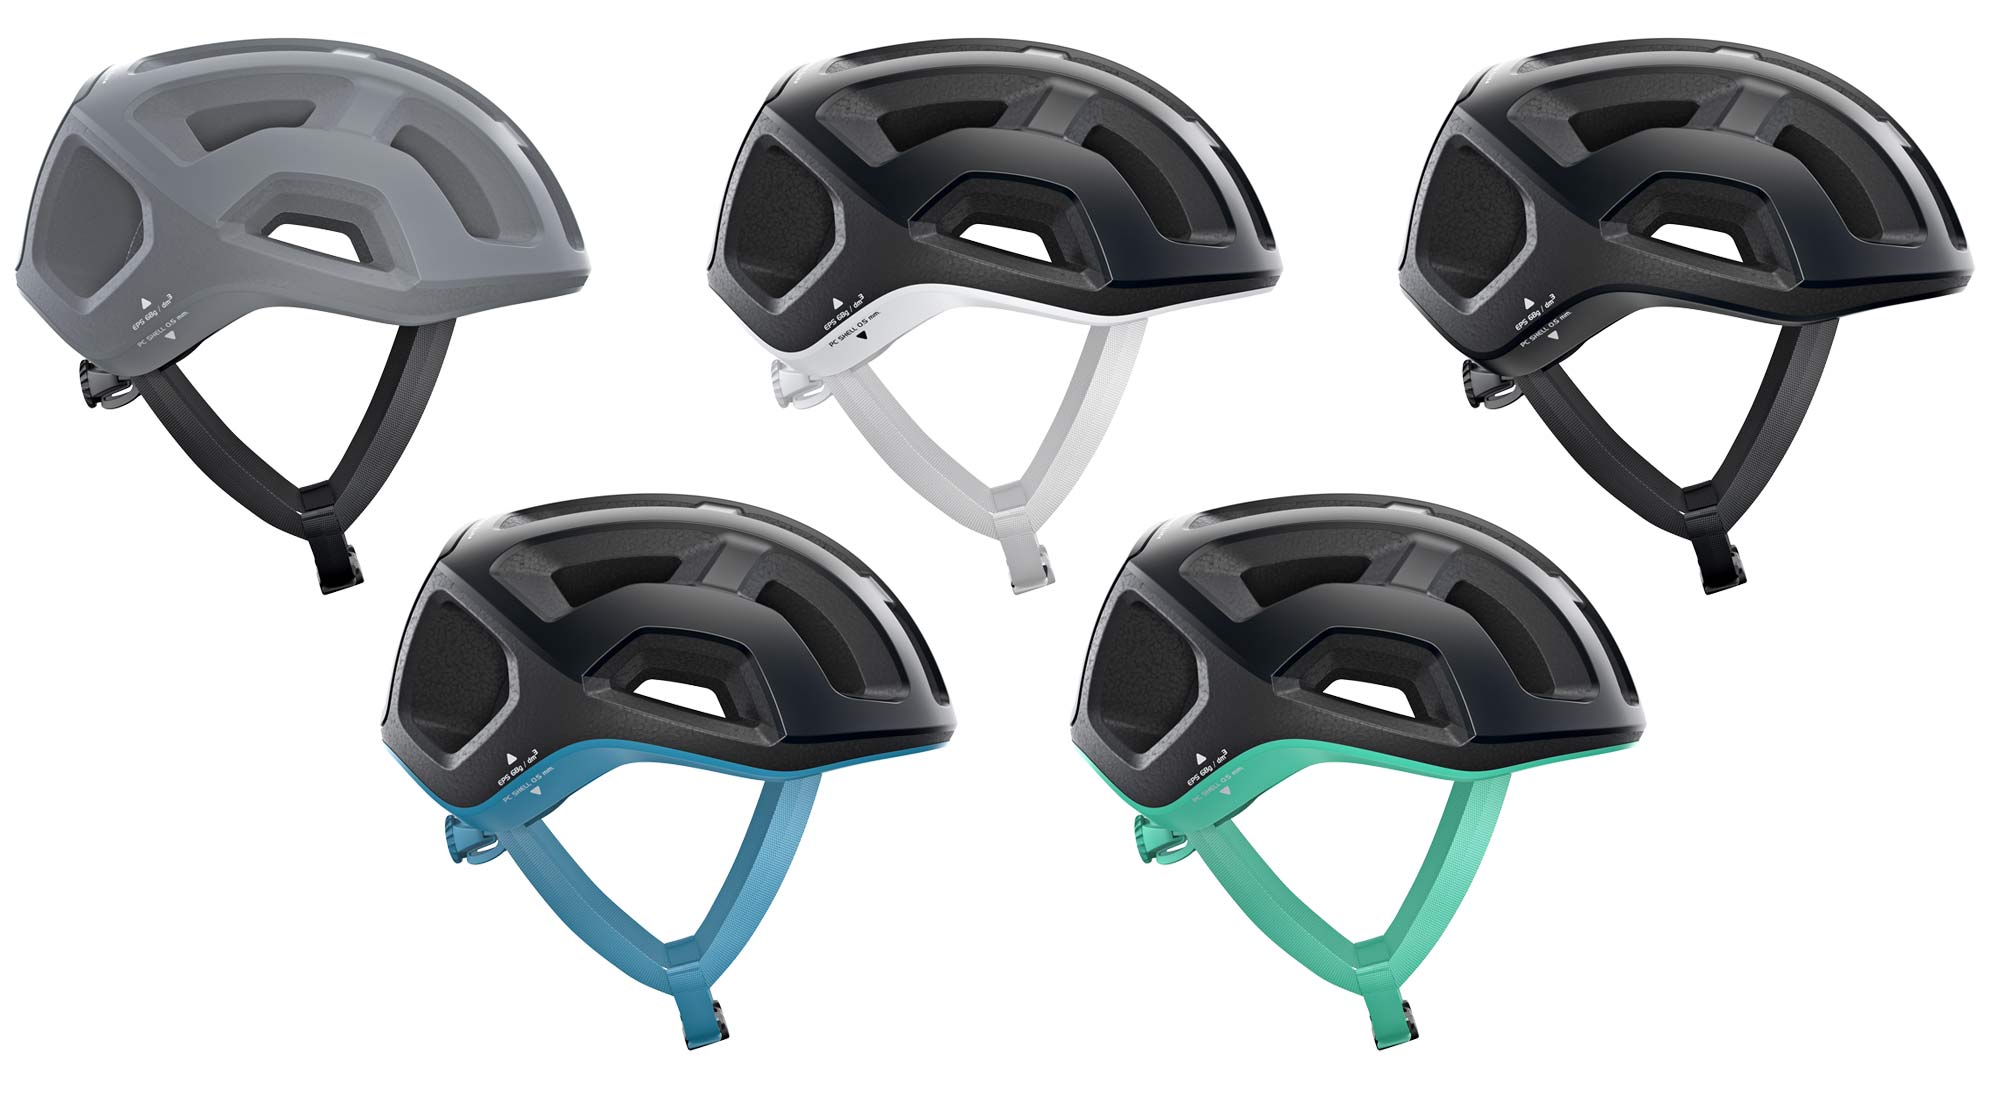 POC-Ventral-Lite-ultralight-helmet_fully-vented-lightweight-road-bike-helmet_colors-gray-white-black-blue-green.jpg